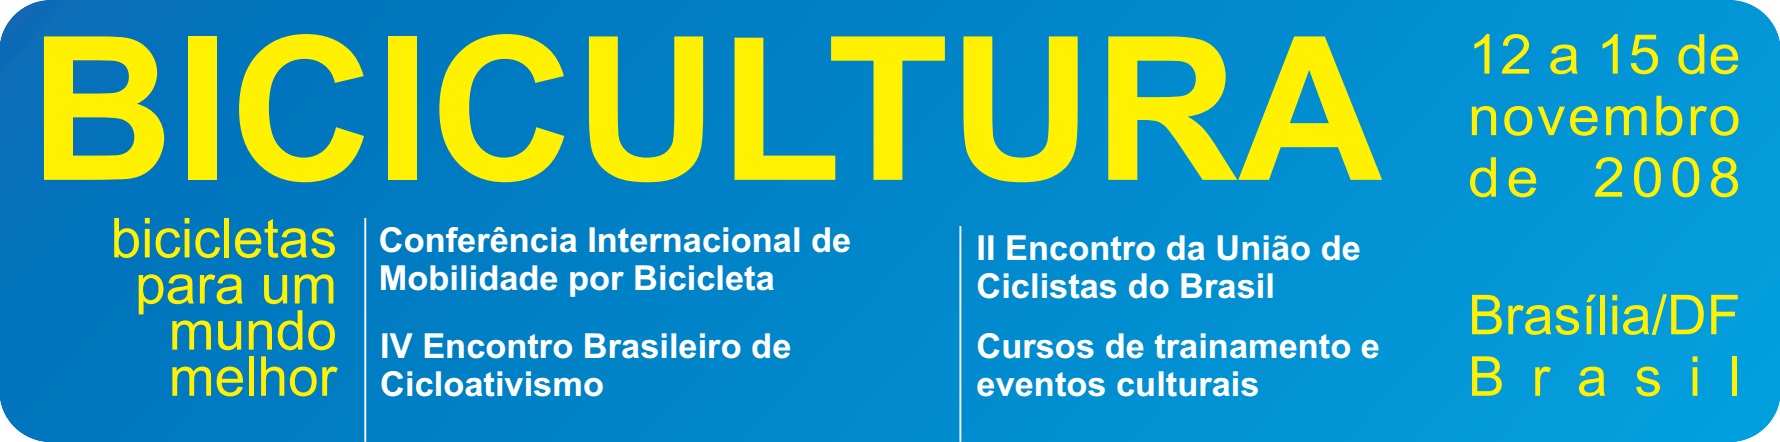 Logo Bicicultura 2008